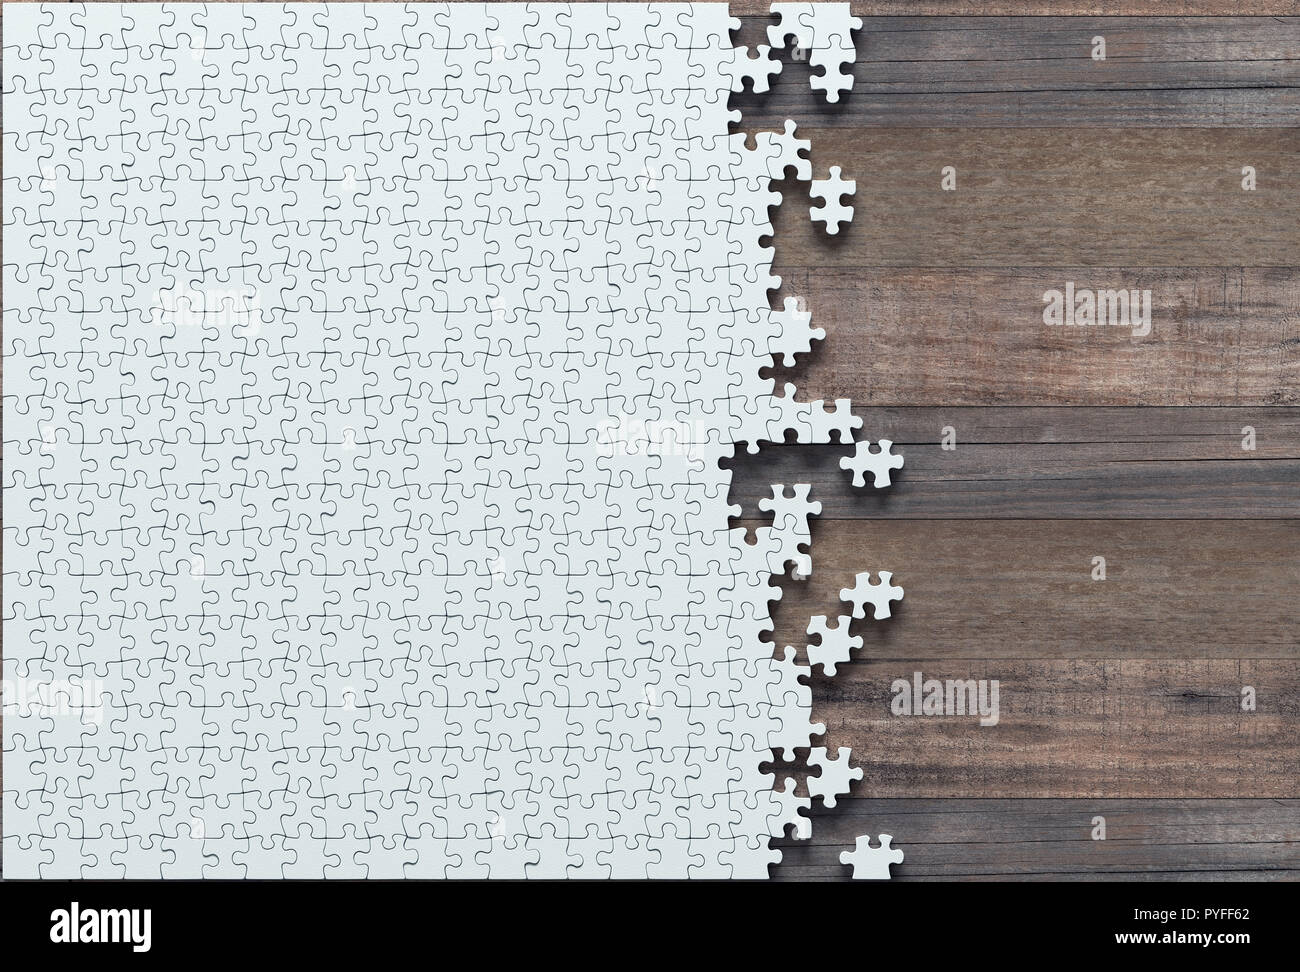 Blank Jigsaw Puzzle otra mitad que falta para terminar. Concepto de trabajo no finalizado. Foto de stock